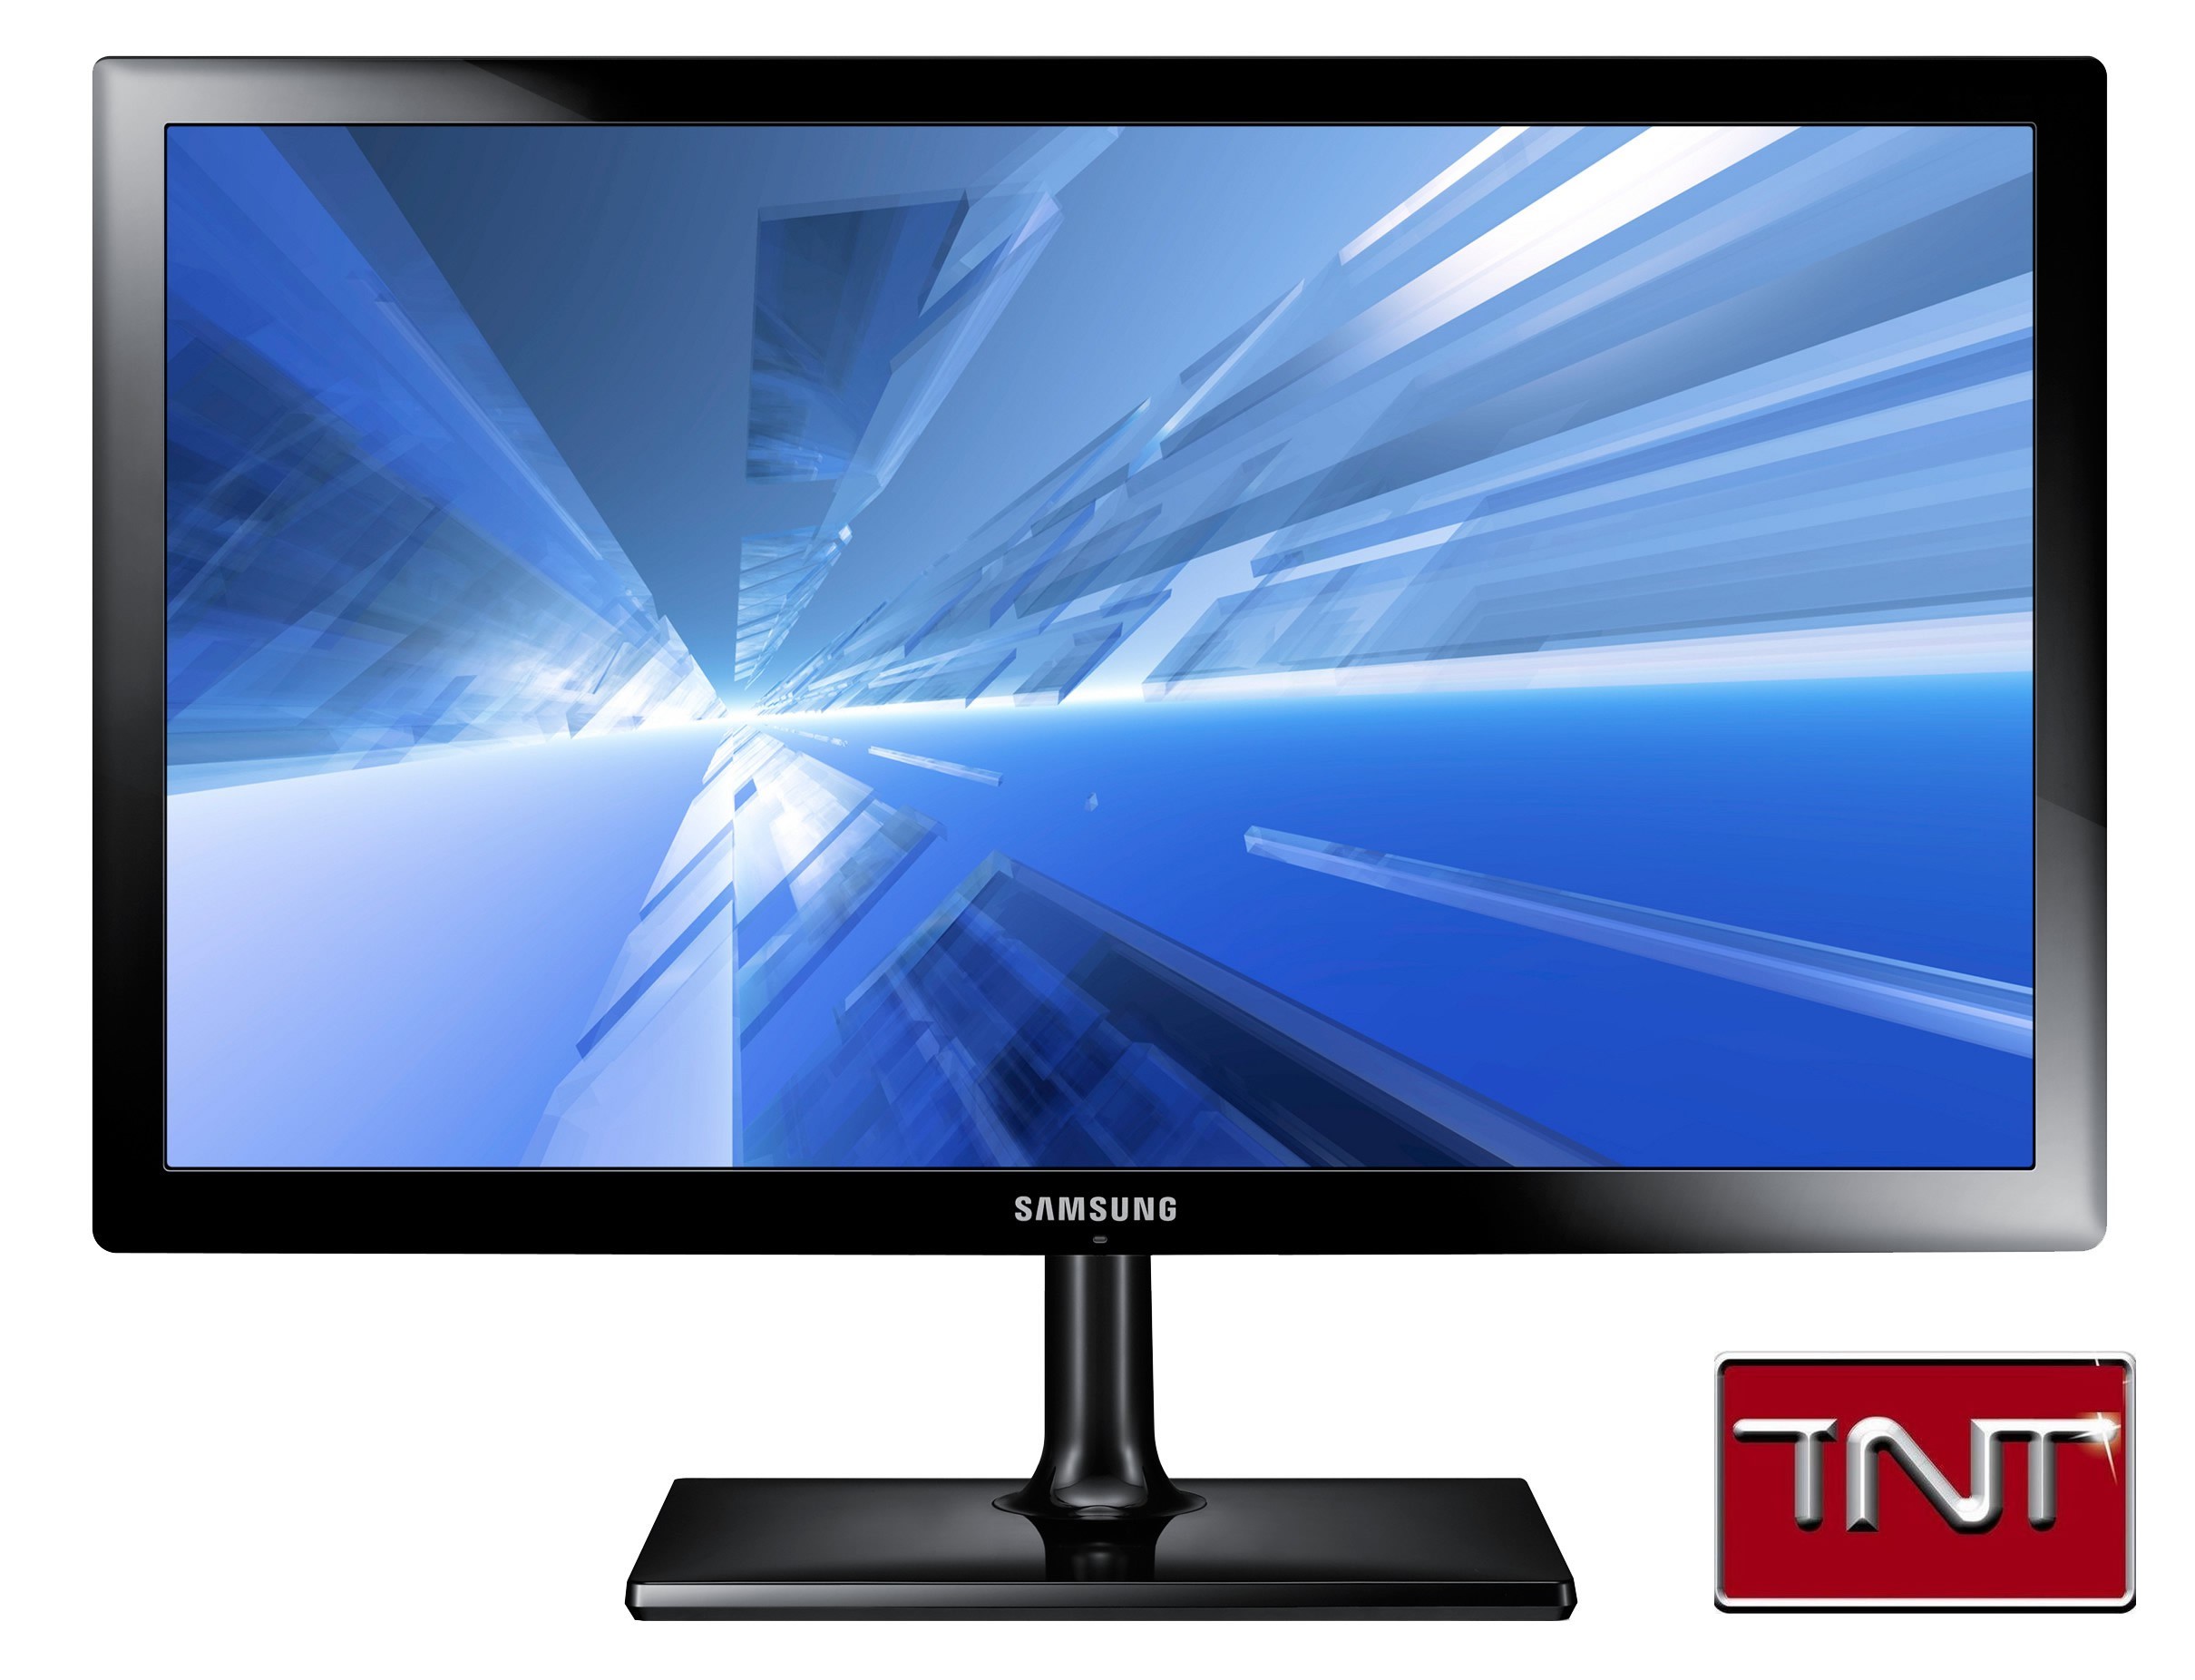 Écran TV Samsung LED TN 22 pouces (16:9) Noir glacé prix Maroc